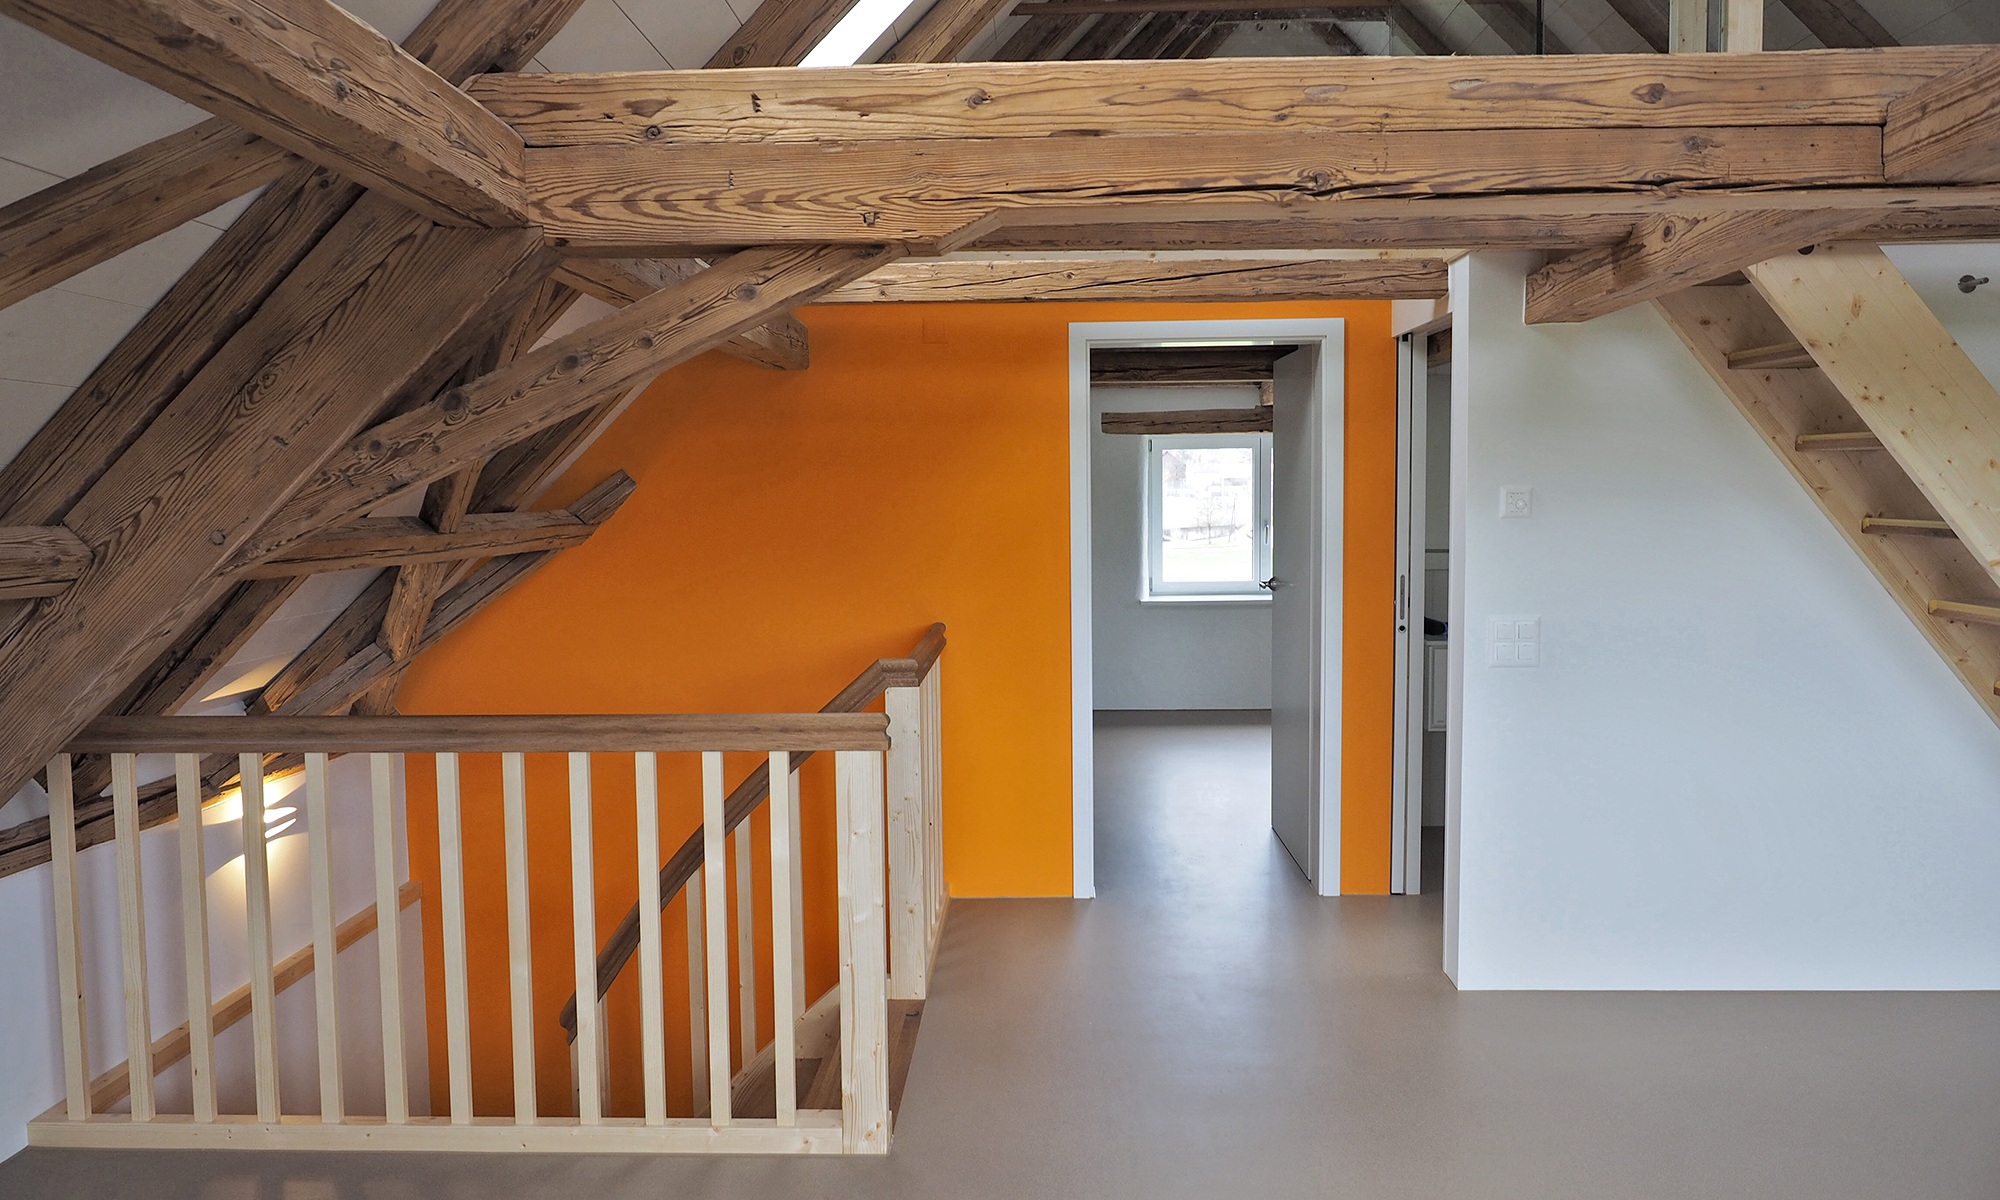 Aufnahme zeigt das grossräumige Dachgeschoss mit Zugang zu weiteren Zimmern, zwei komplett aus Holz ausgestatteten Treppen und den breiten Holzbalken.